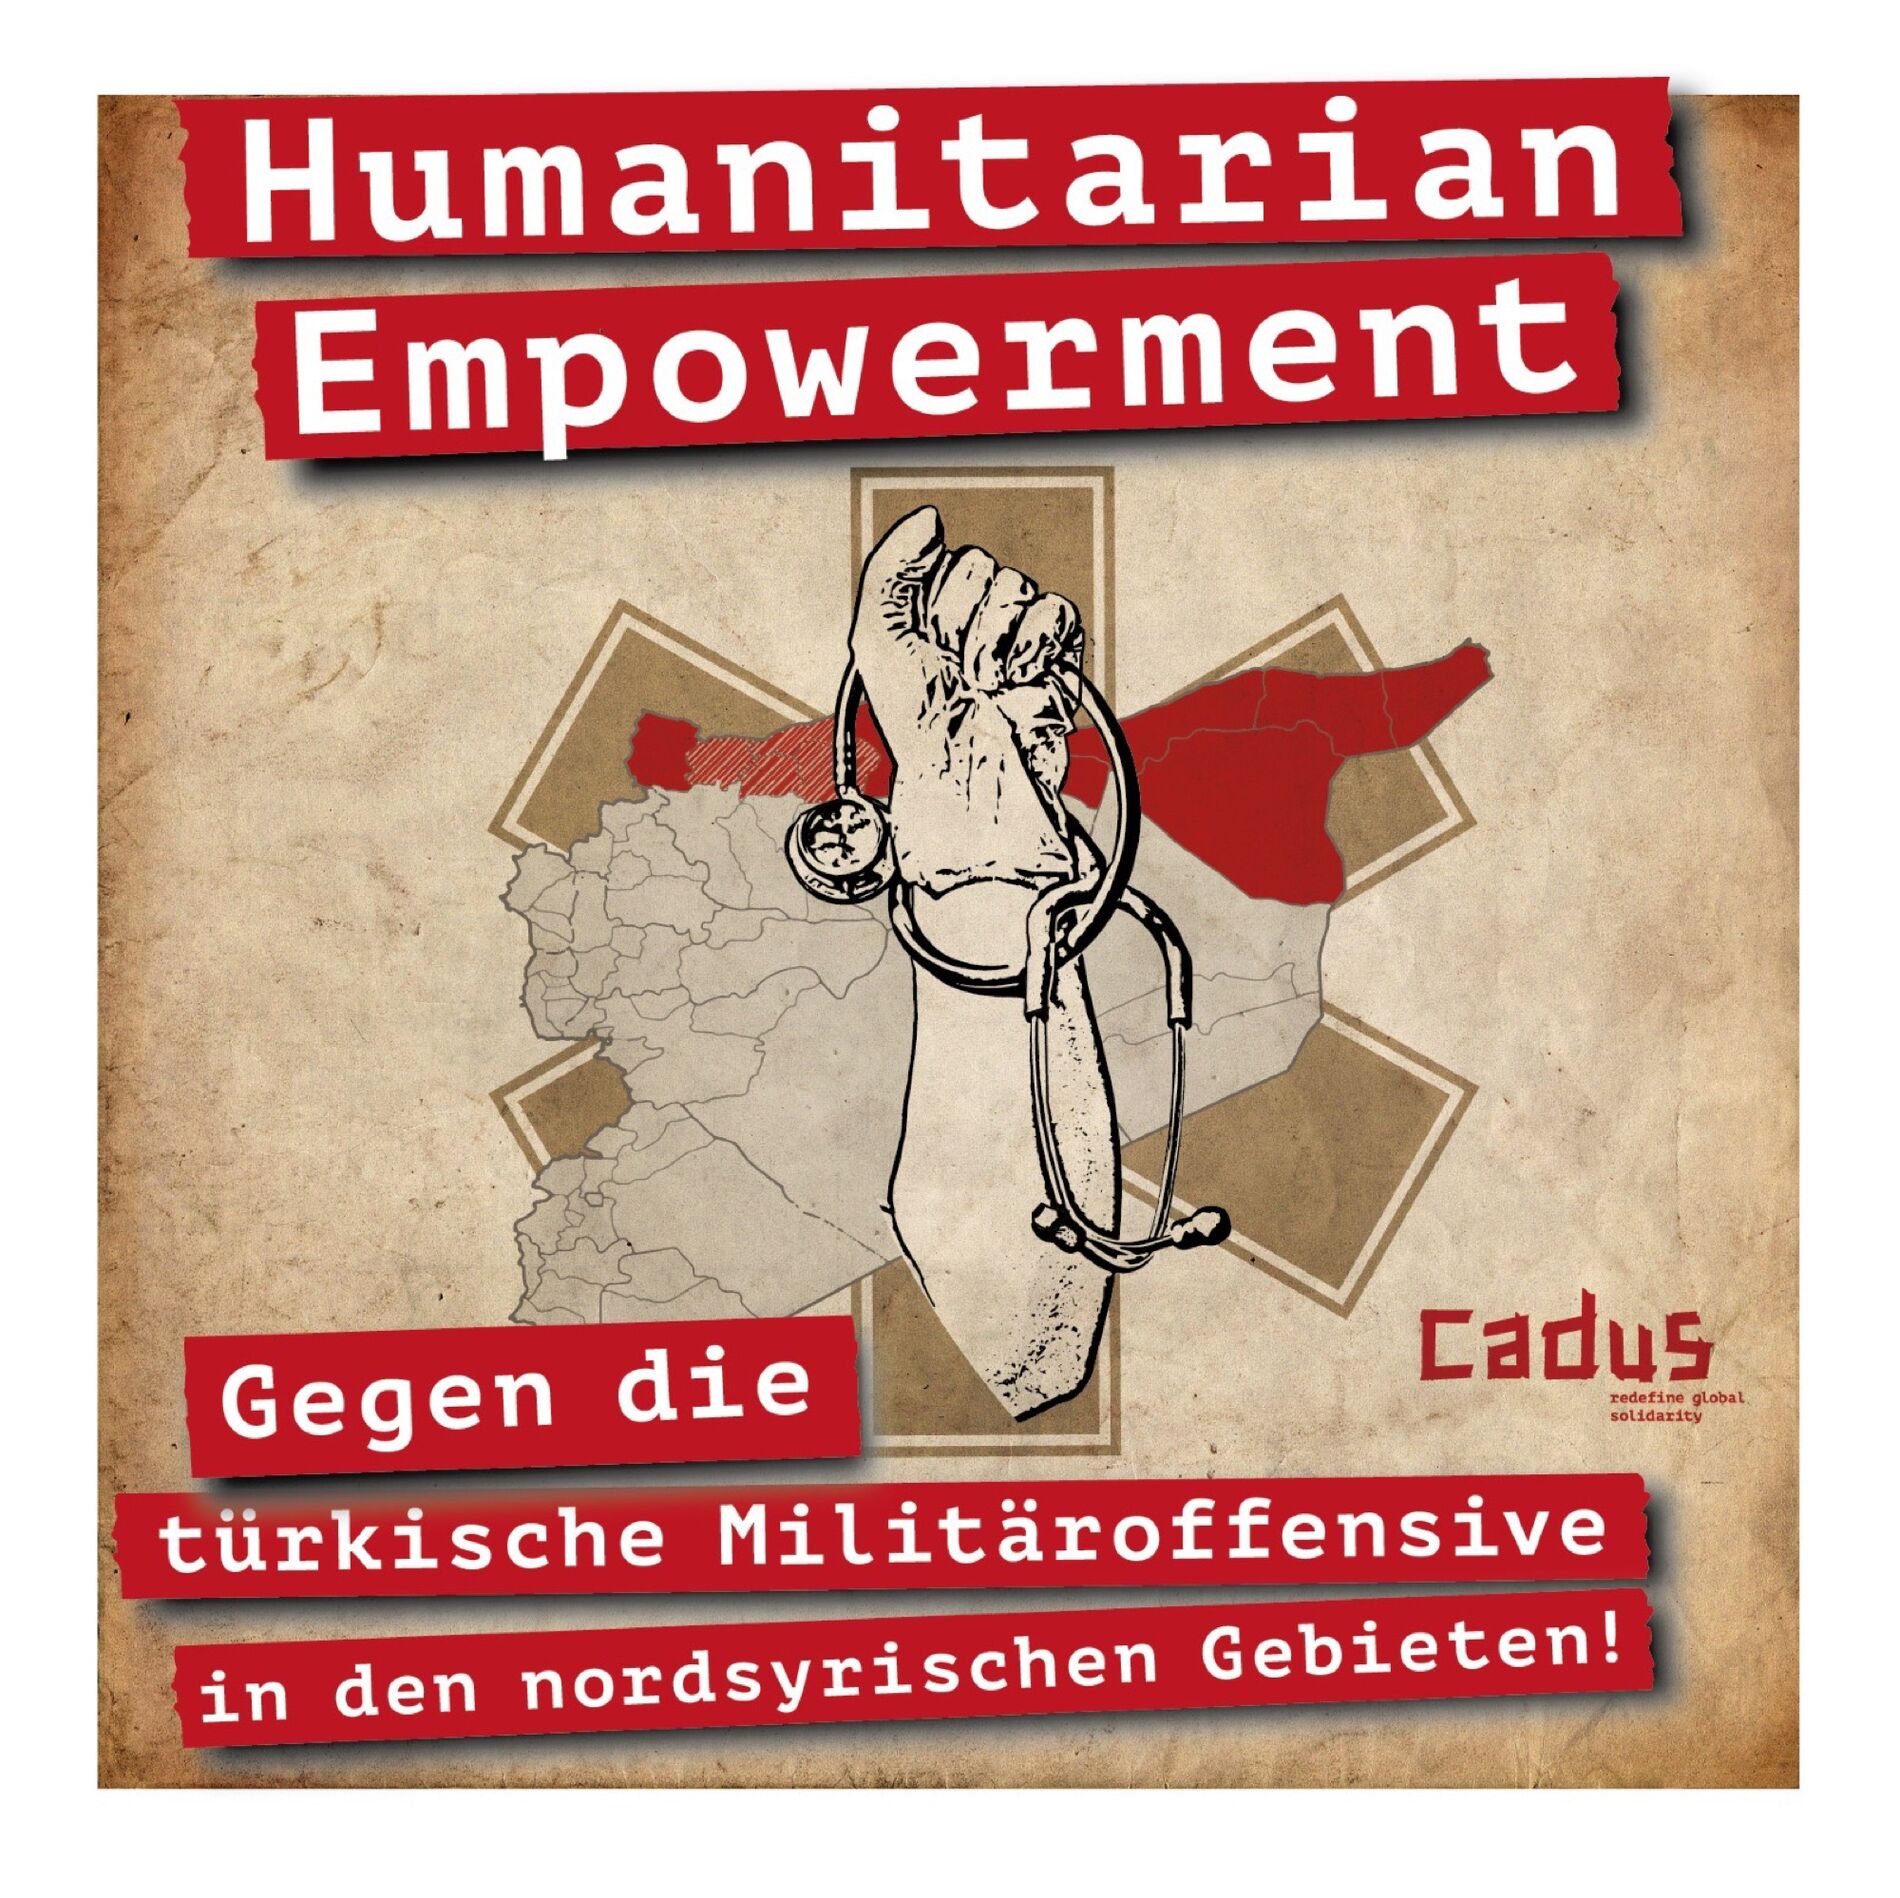 Humanitarian Empowerment - Gegen die türkische Militäroffensive in den nordsyrischen Gebieten!